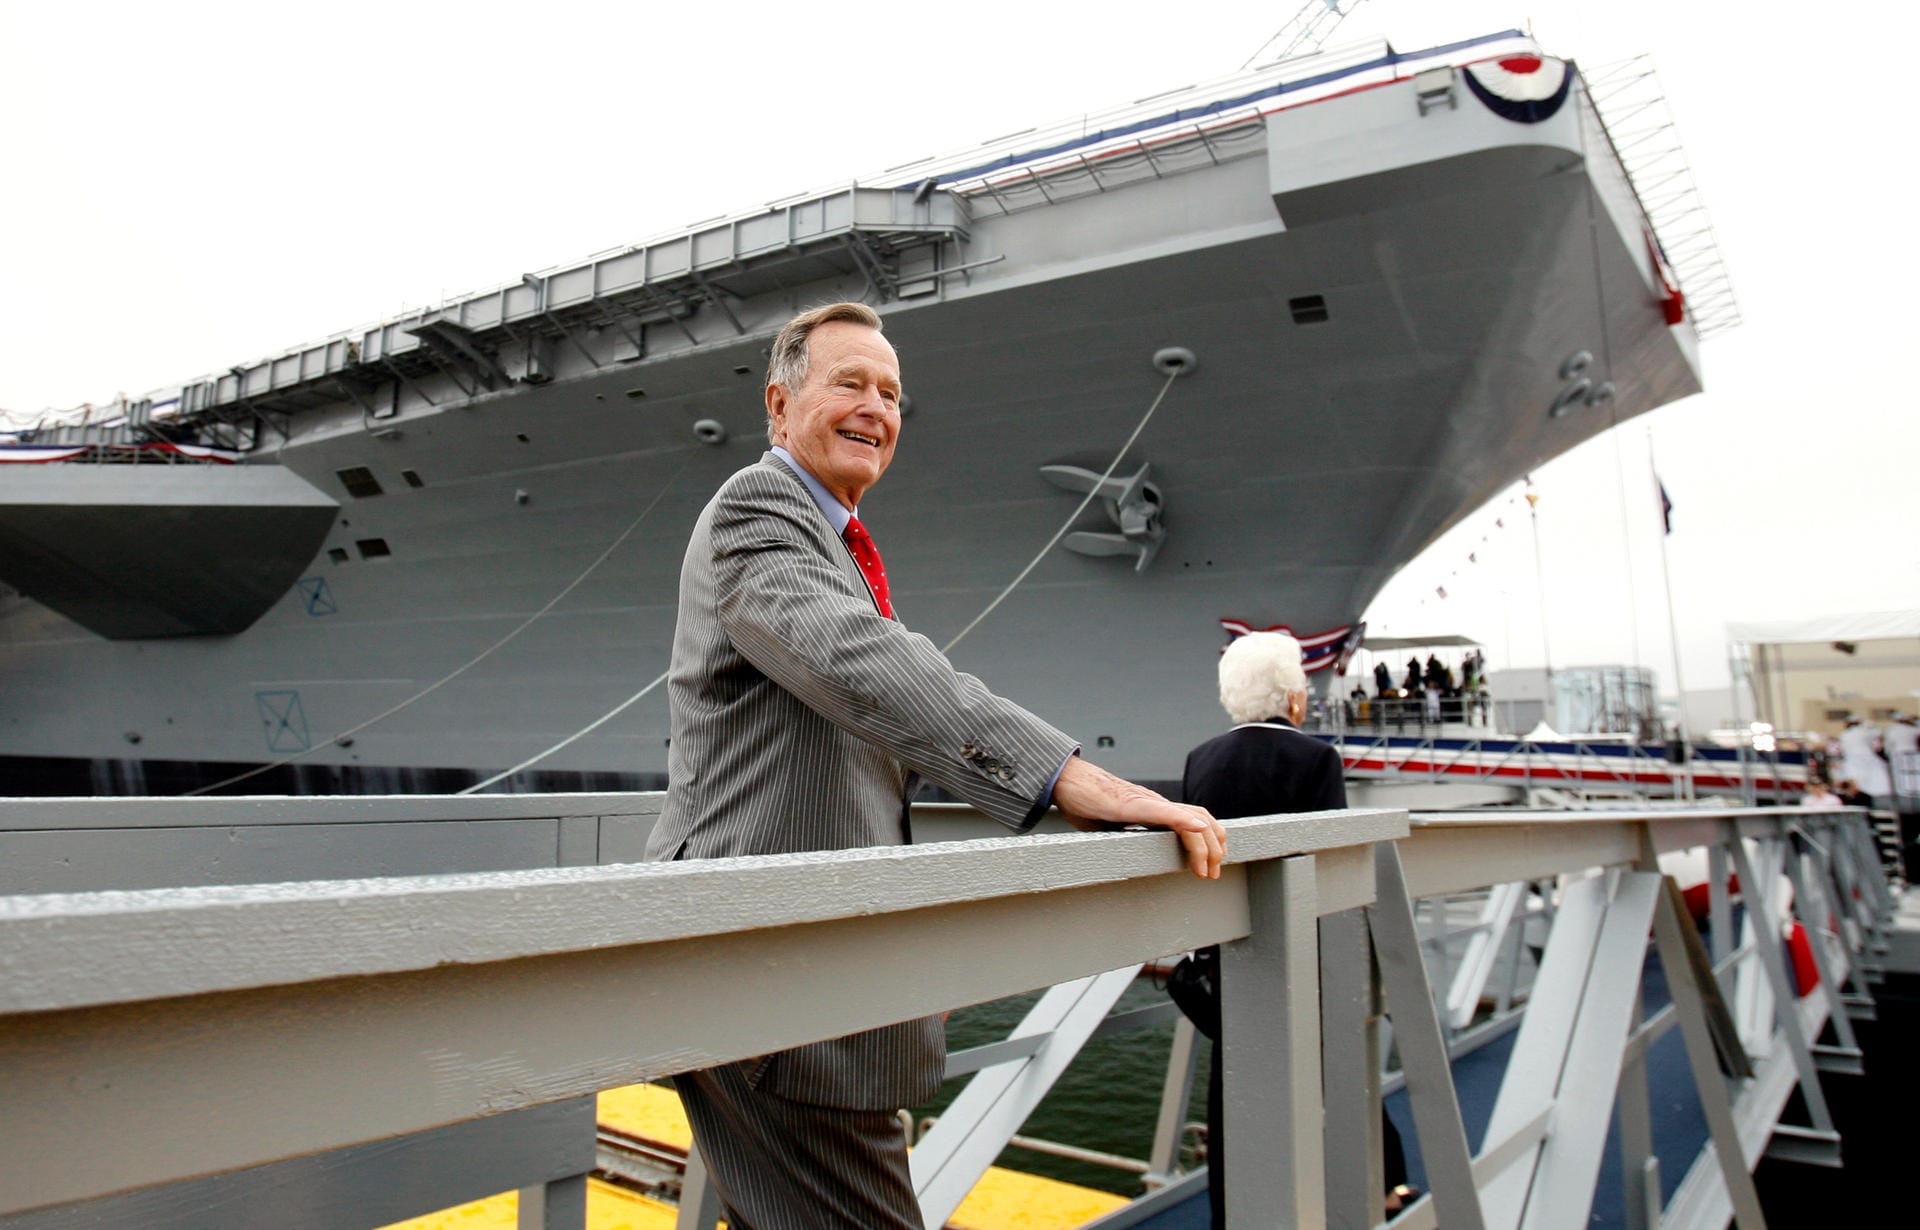 Der Ex-Präsident und sein Schiff: Im Oktober 2006 läuft die USS George H. W. Bush vom Stapel, ein nukleargetriebener Flugzeugträger der Nimitz-Klasse. Im Bild ist ein sichtlich stolzer Bush bei der Taufe des nach ihm benannten 97.000-Tonnen-Kriegsschiffes zu sehen.